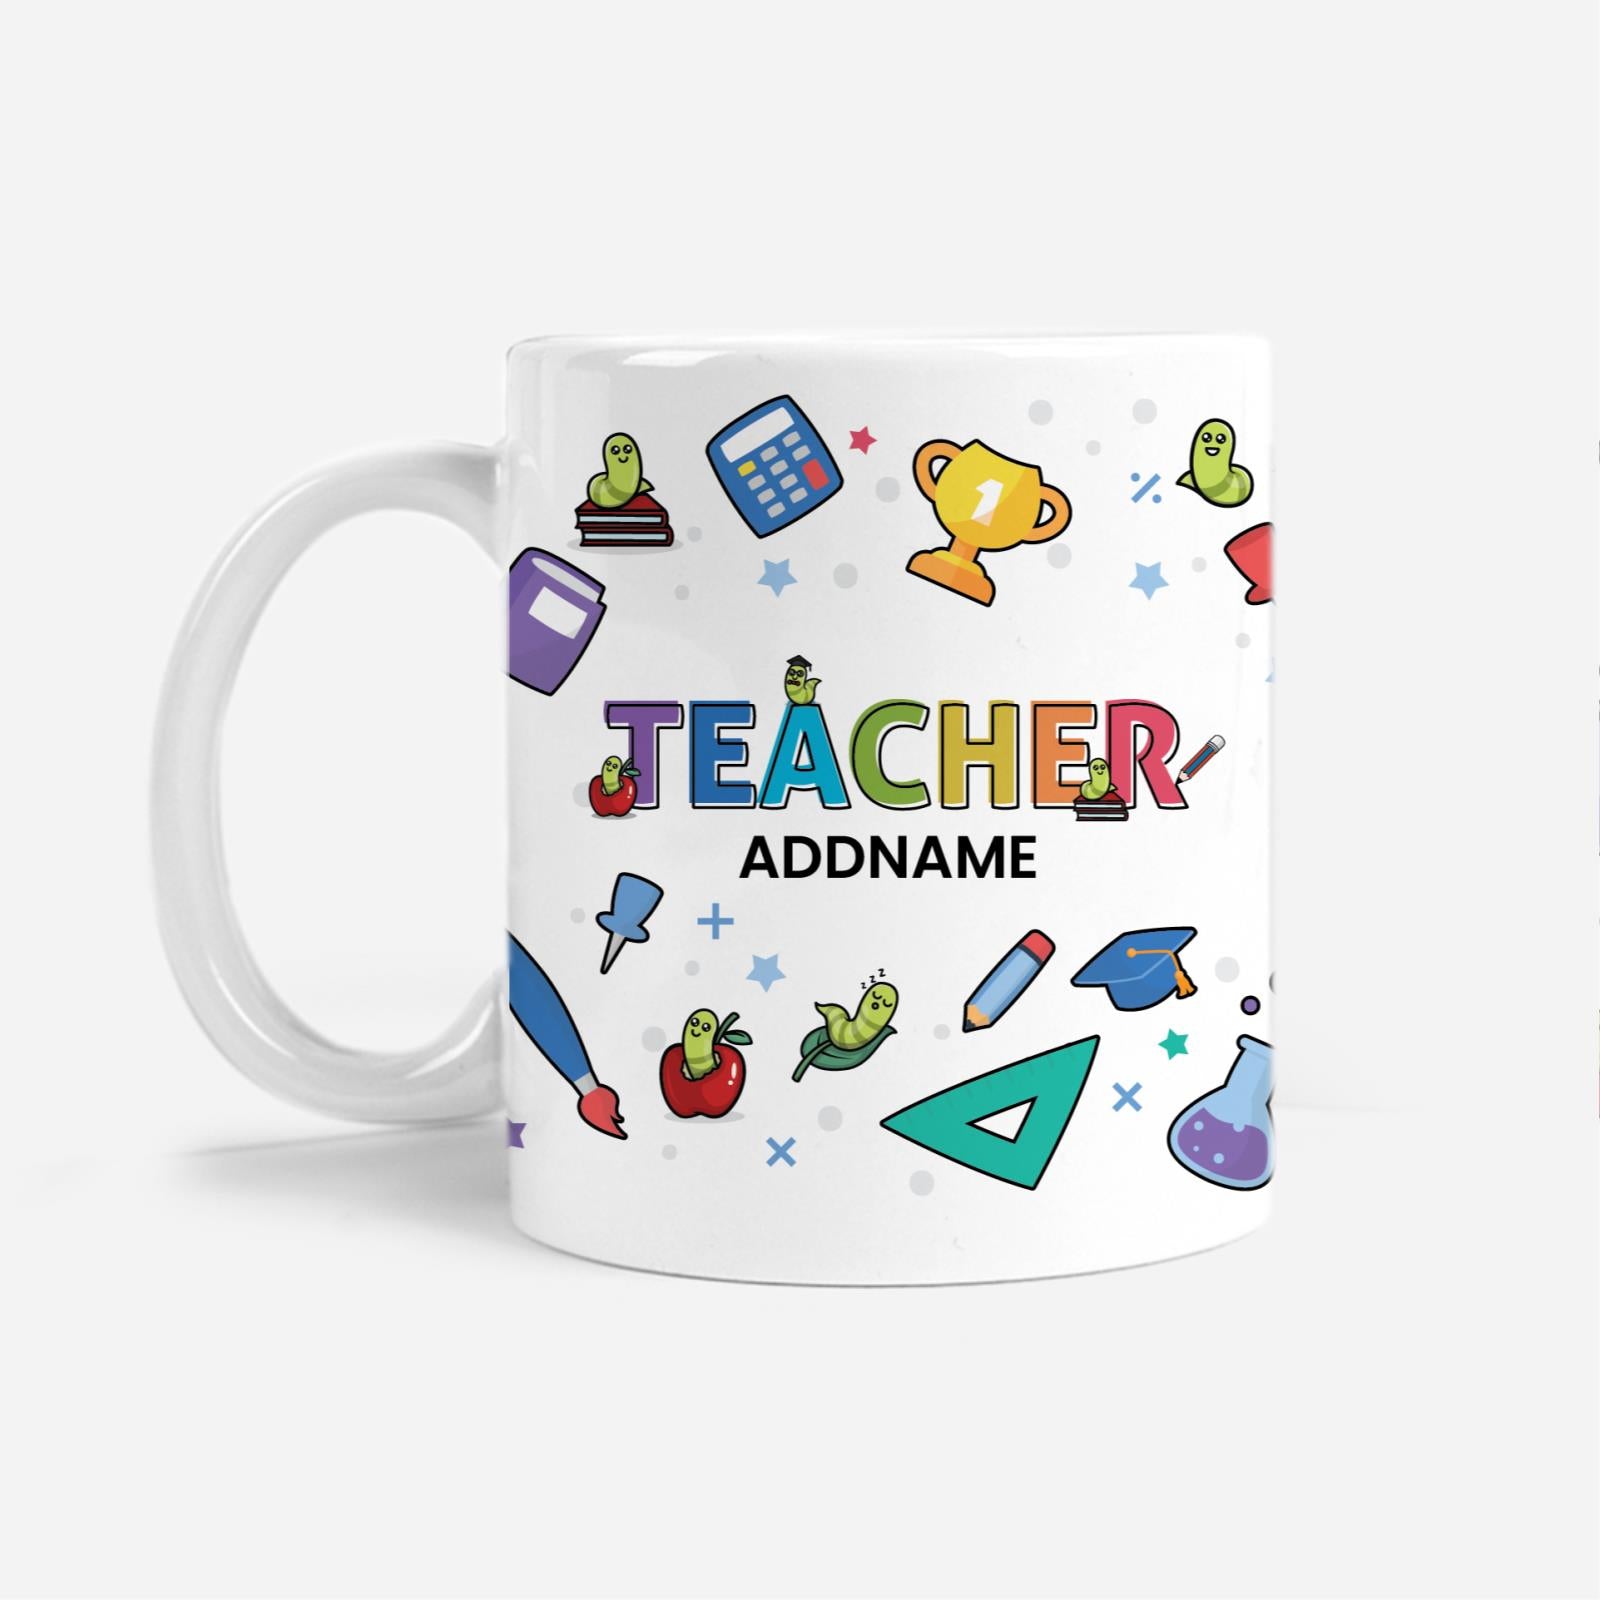 Teacher Addname - Mug